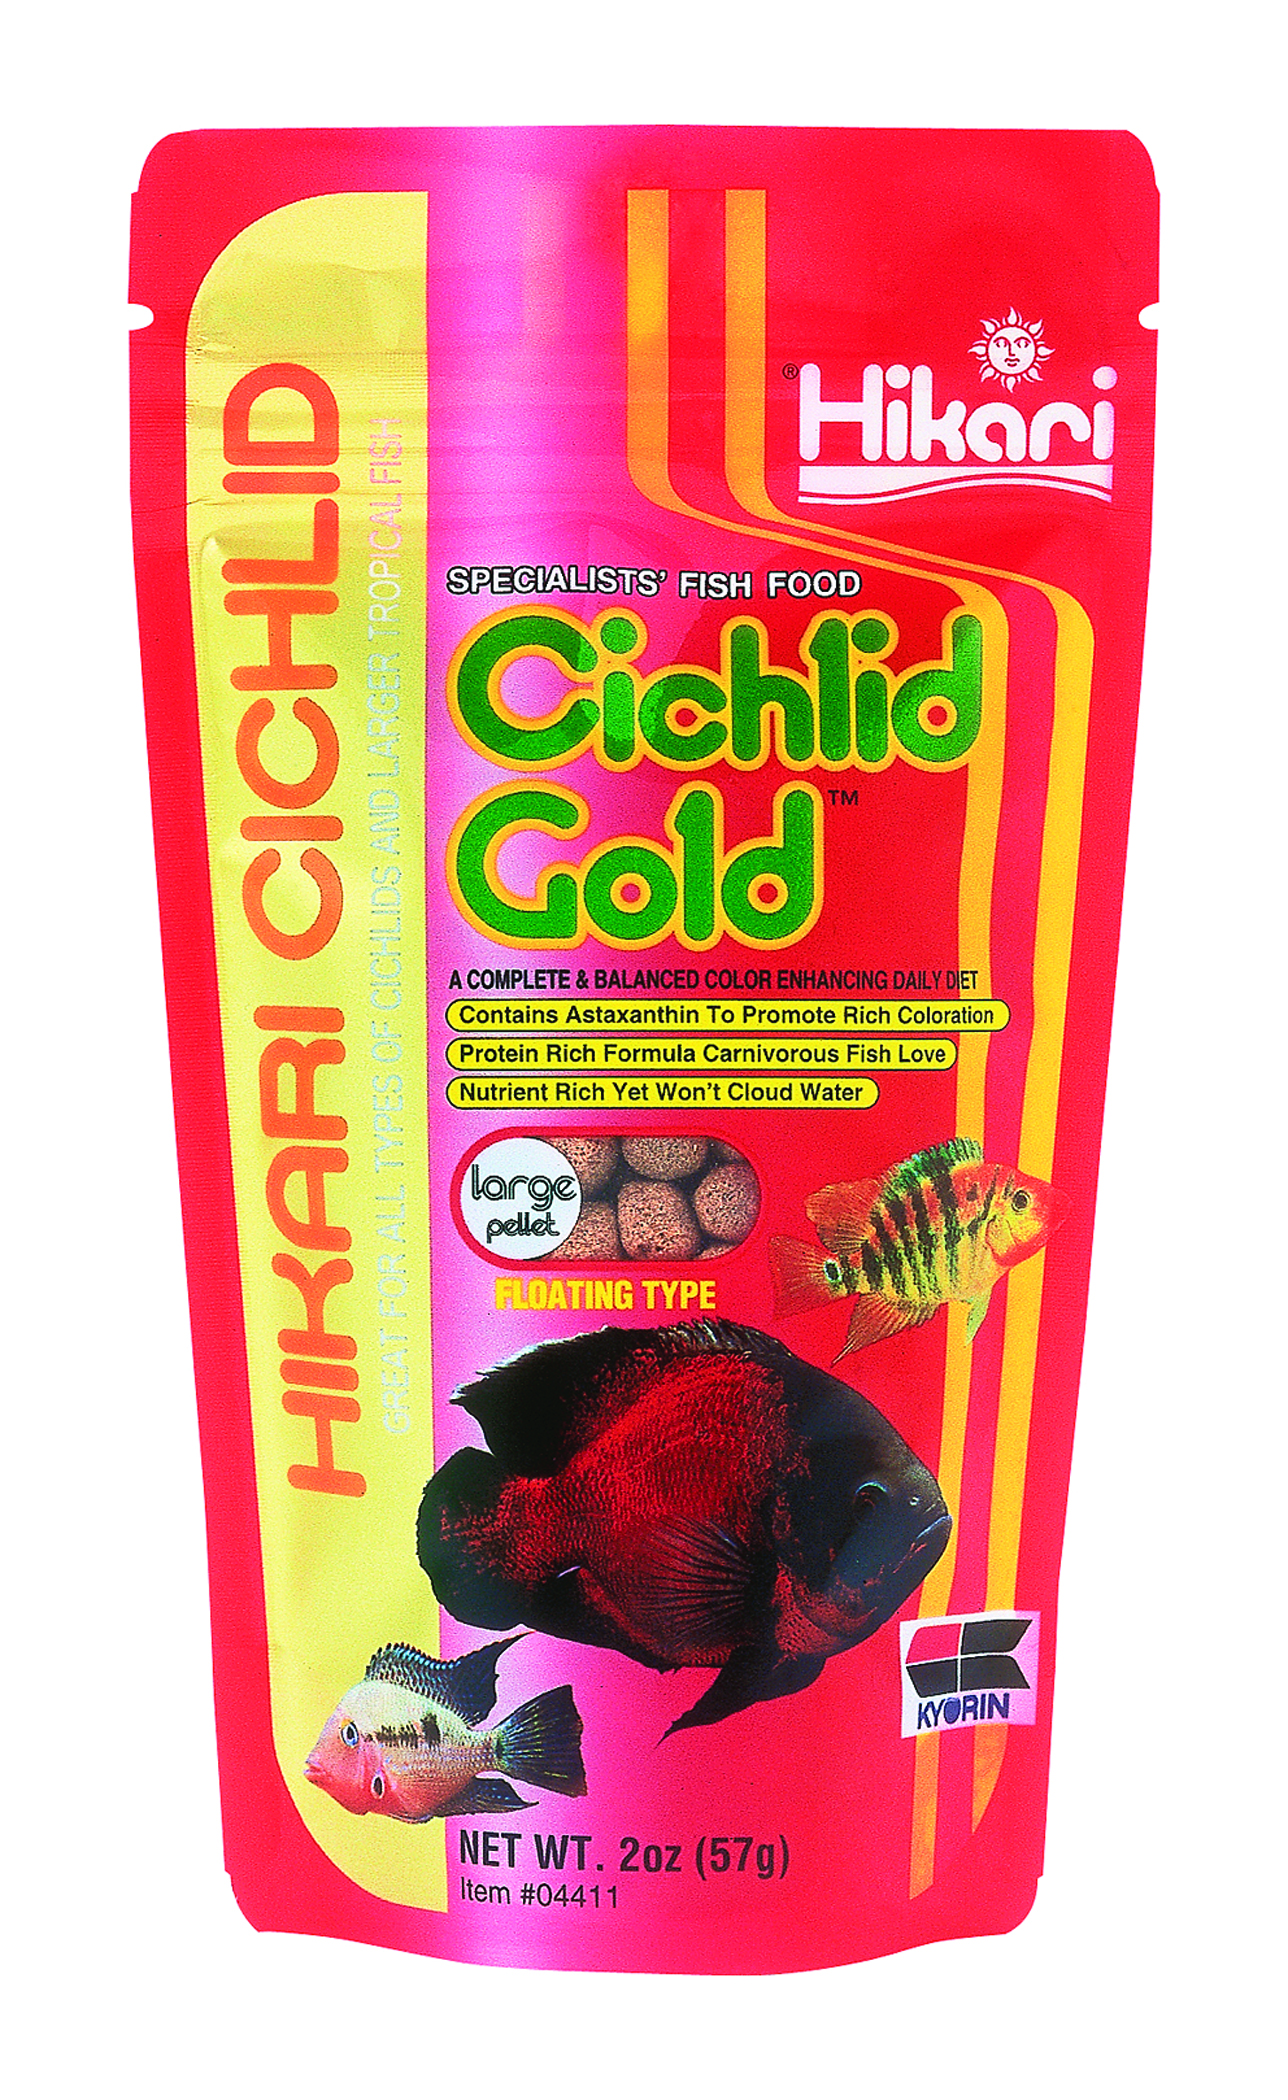 Cichlid Gold Large